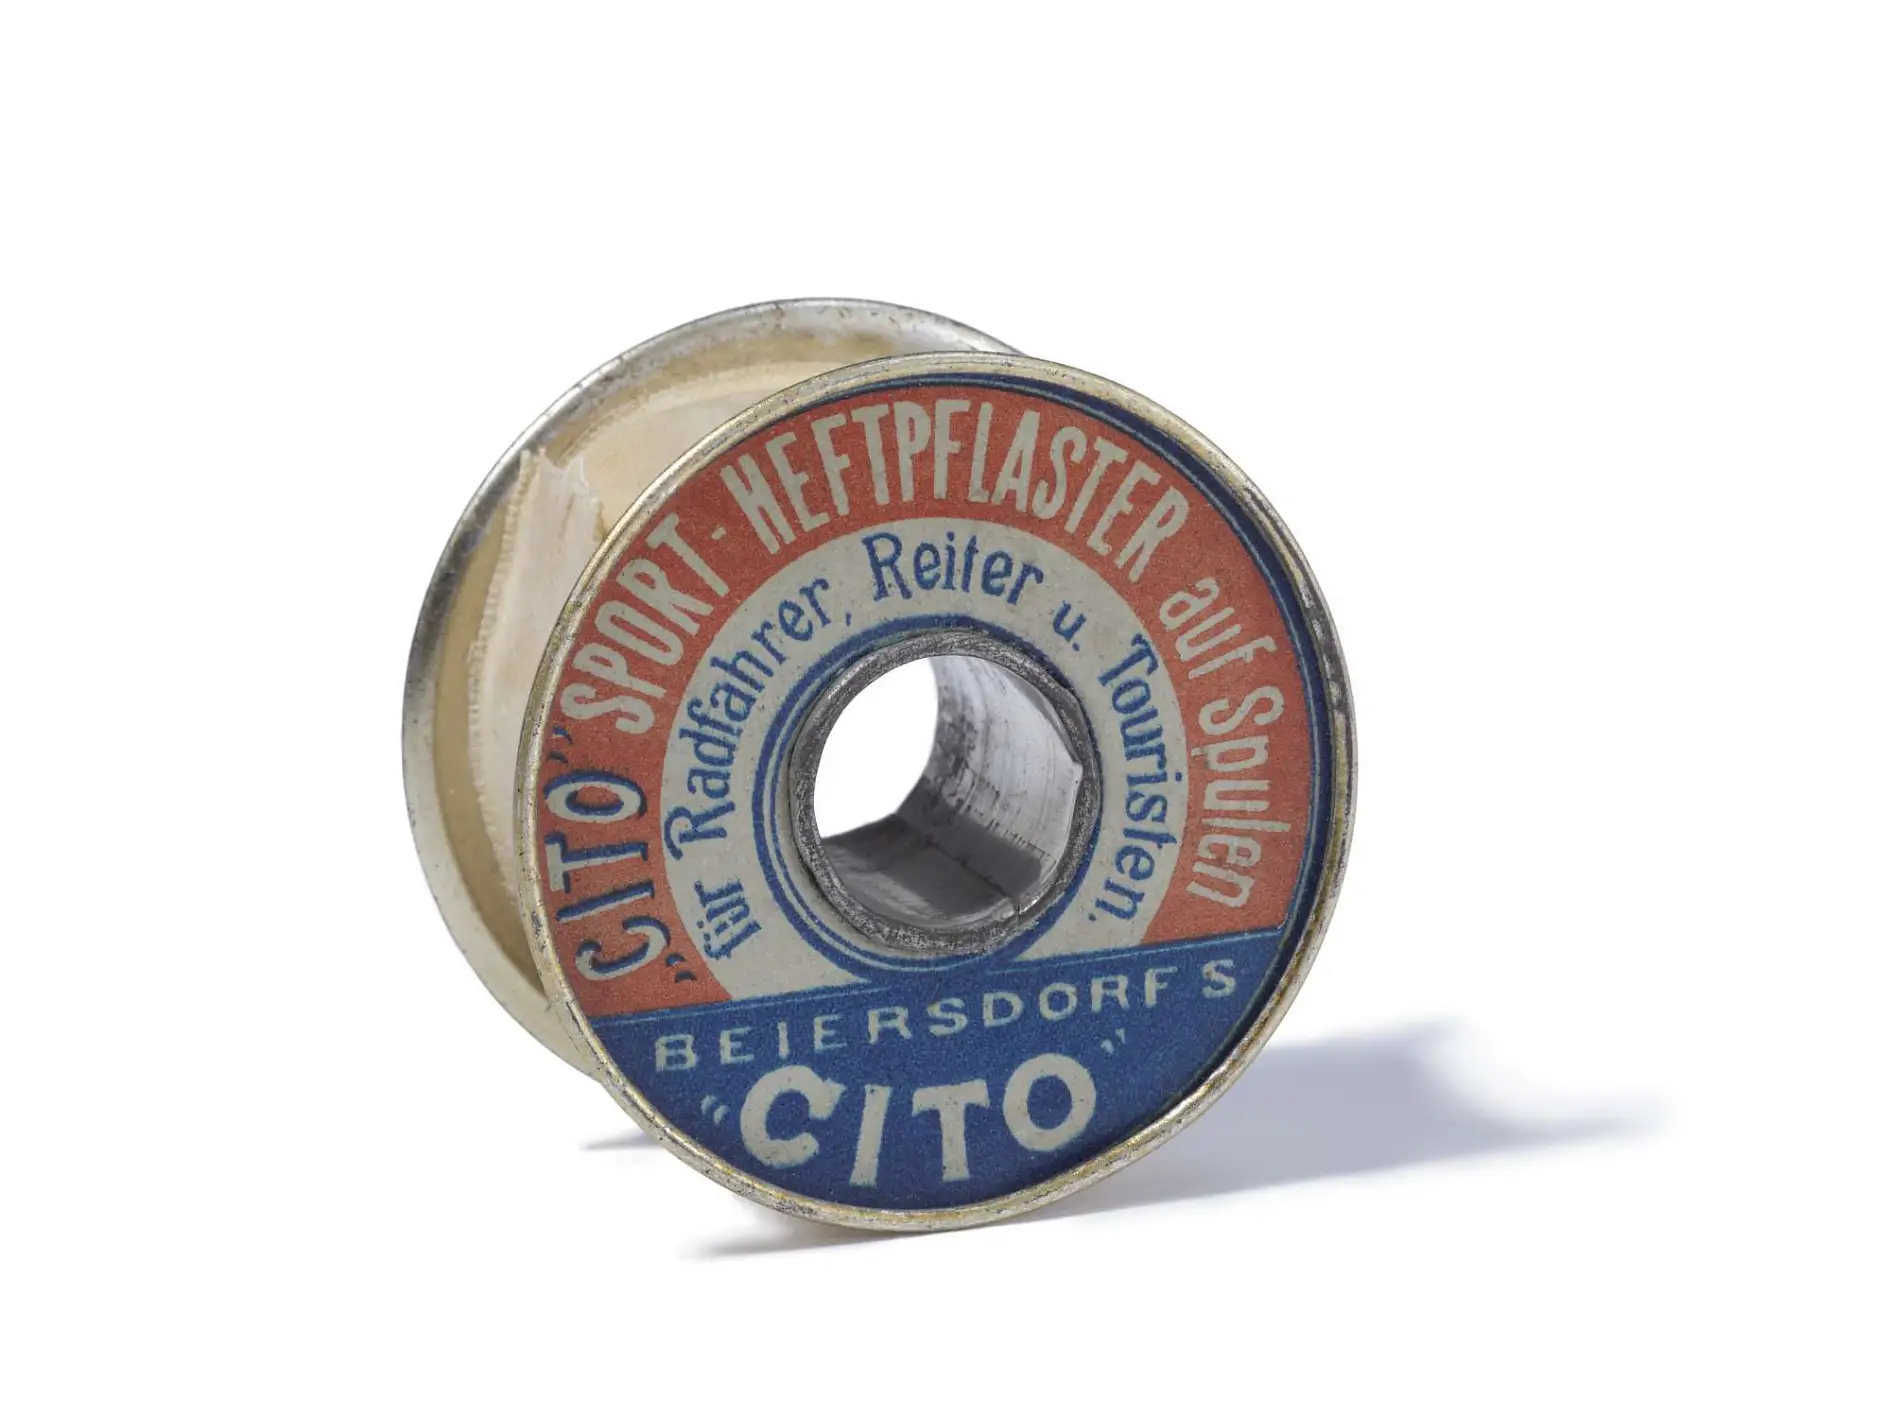 Cito, den selvklæbende sportstape fra 1896, er verdens første selvklæbende tekniske tape.